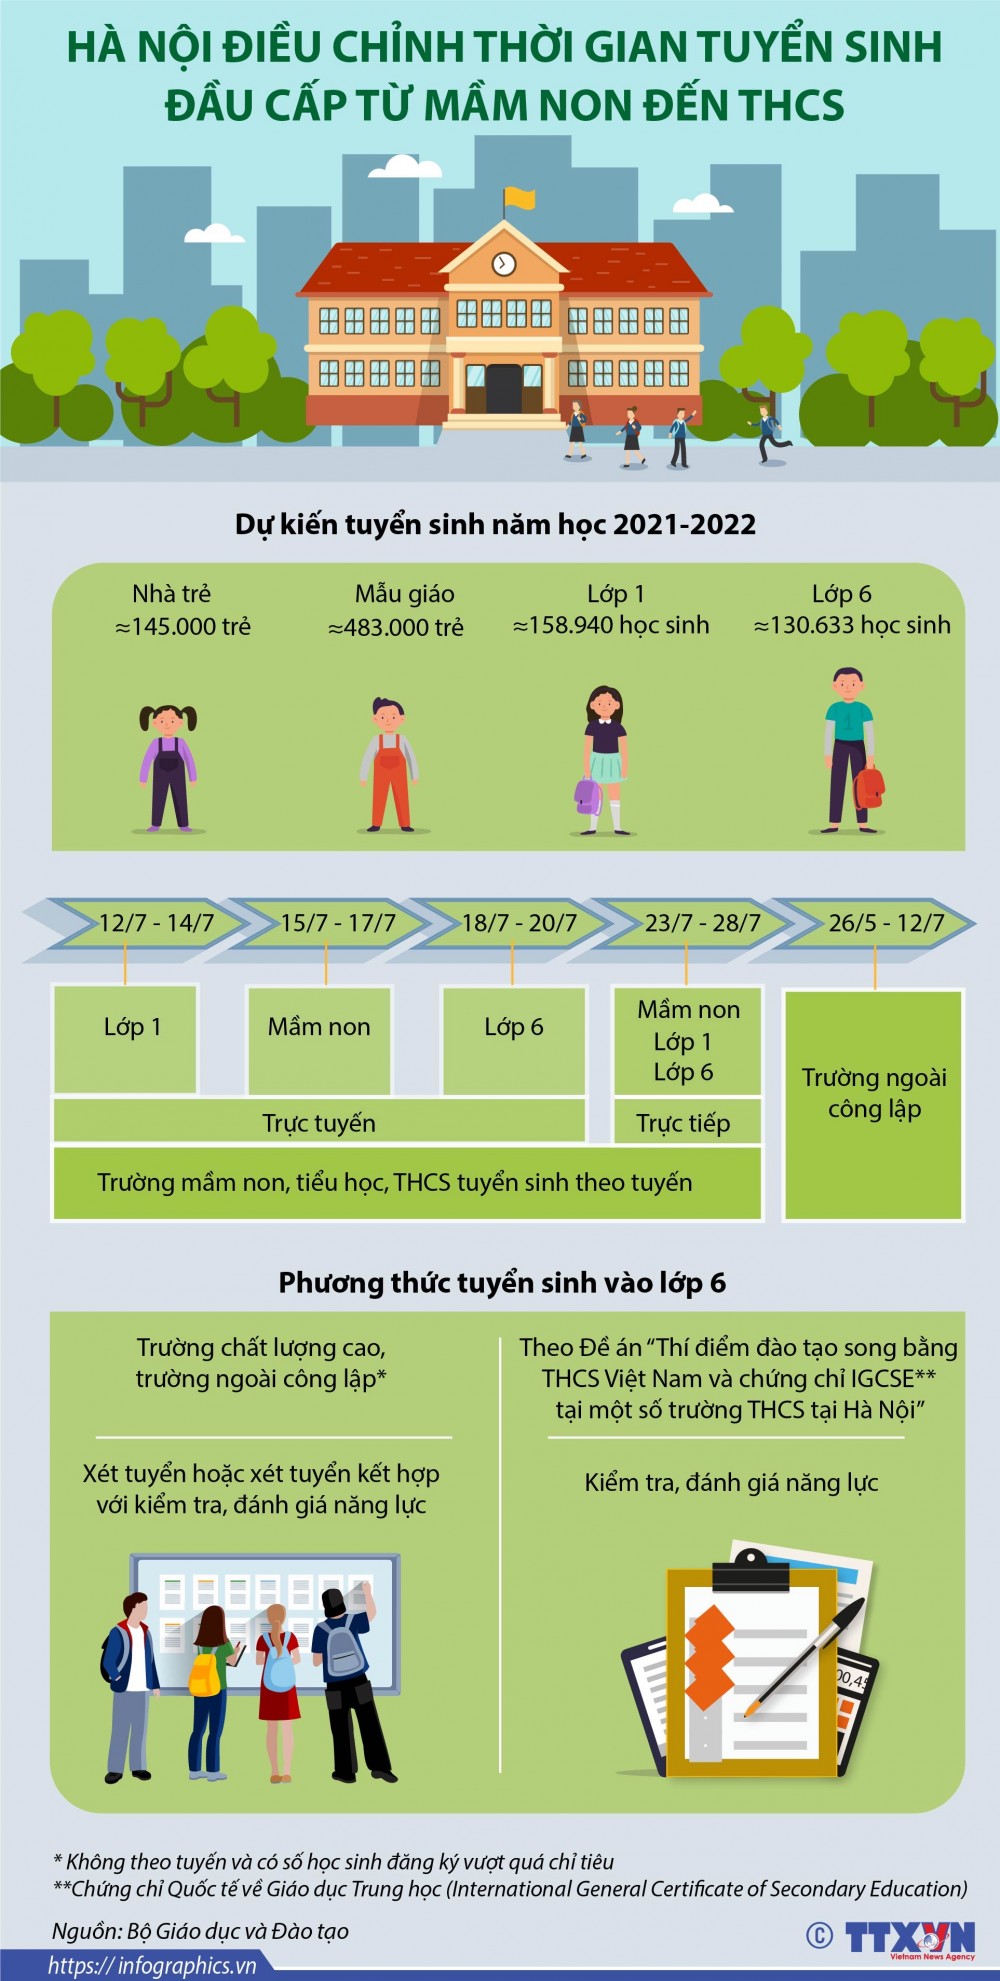 Toàn bộ thông tin về điều chỉnh thời gian tuyển sinh đầu cấp từ mầm non đến THCS ở Hà Nội